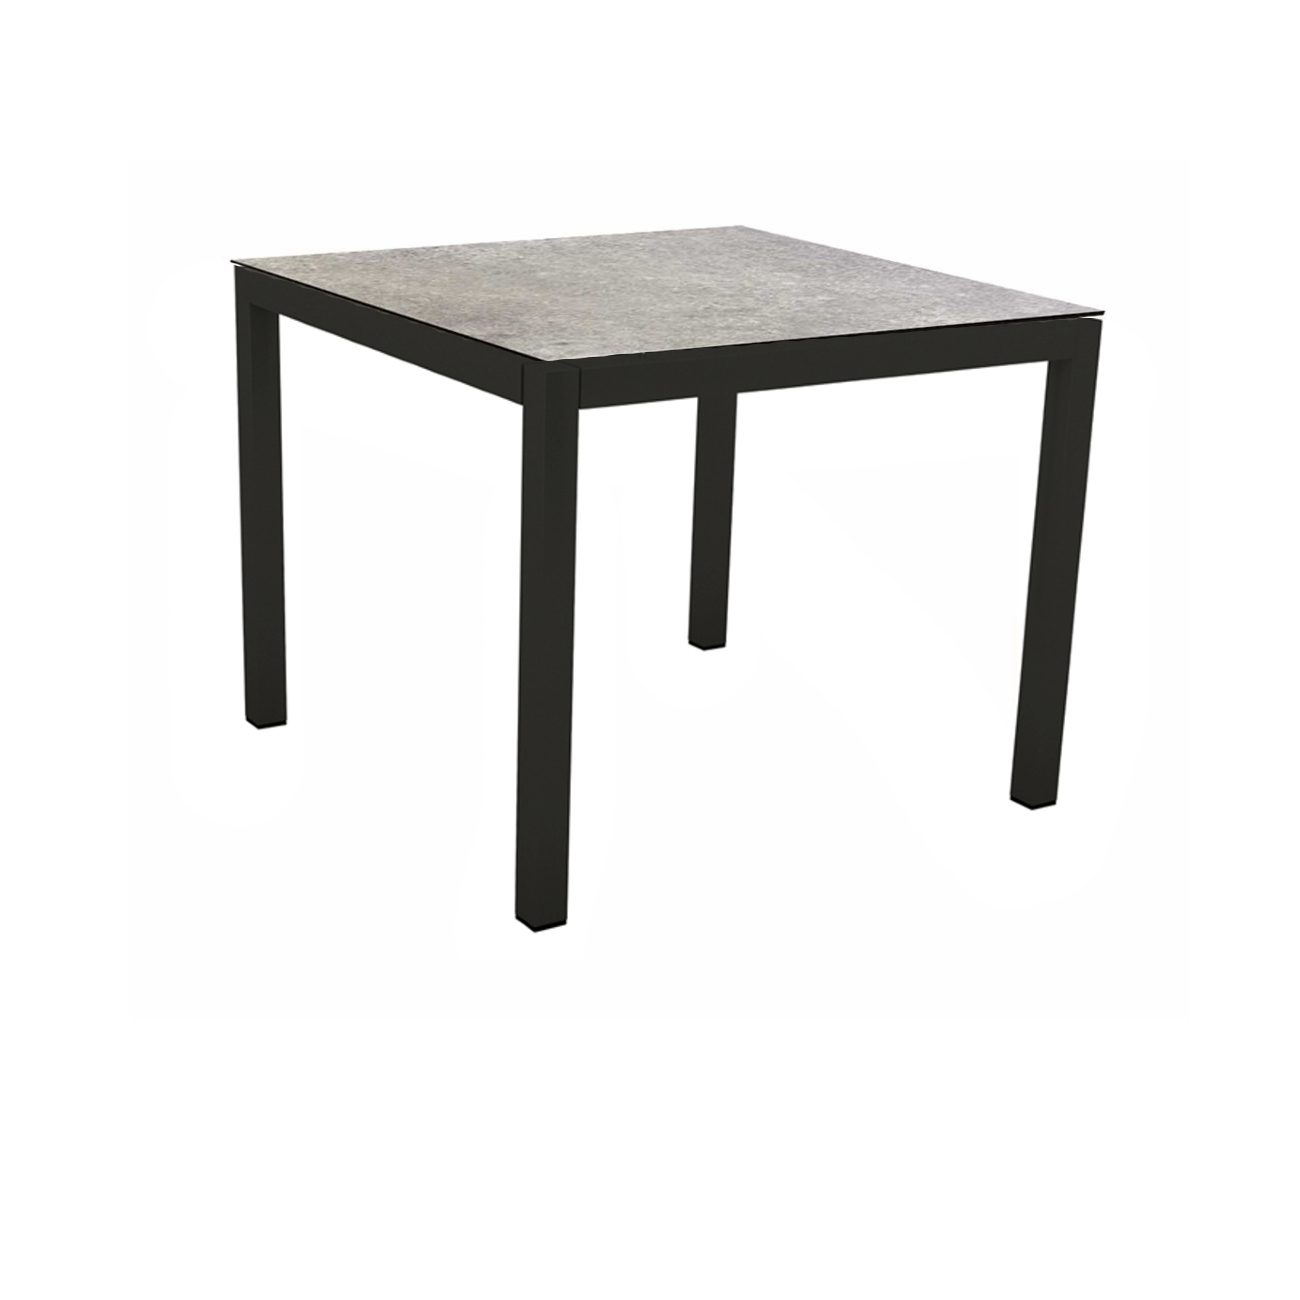 Stern Gartentisch, Gestell Aluminium schwarz matt, Tischplatte HPL Vintage Stone, 80x80 cm